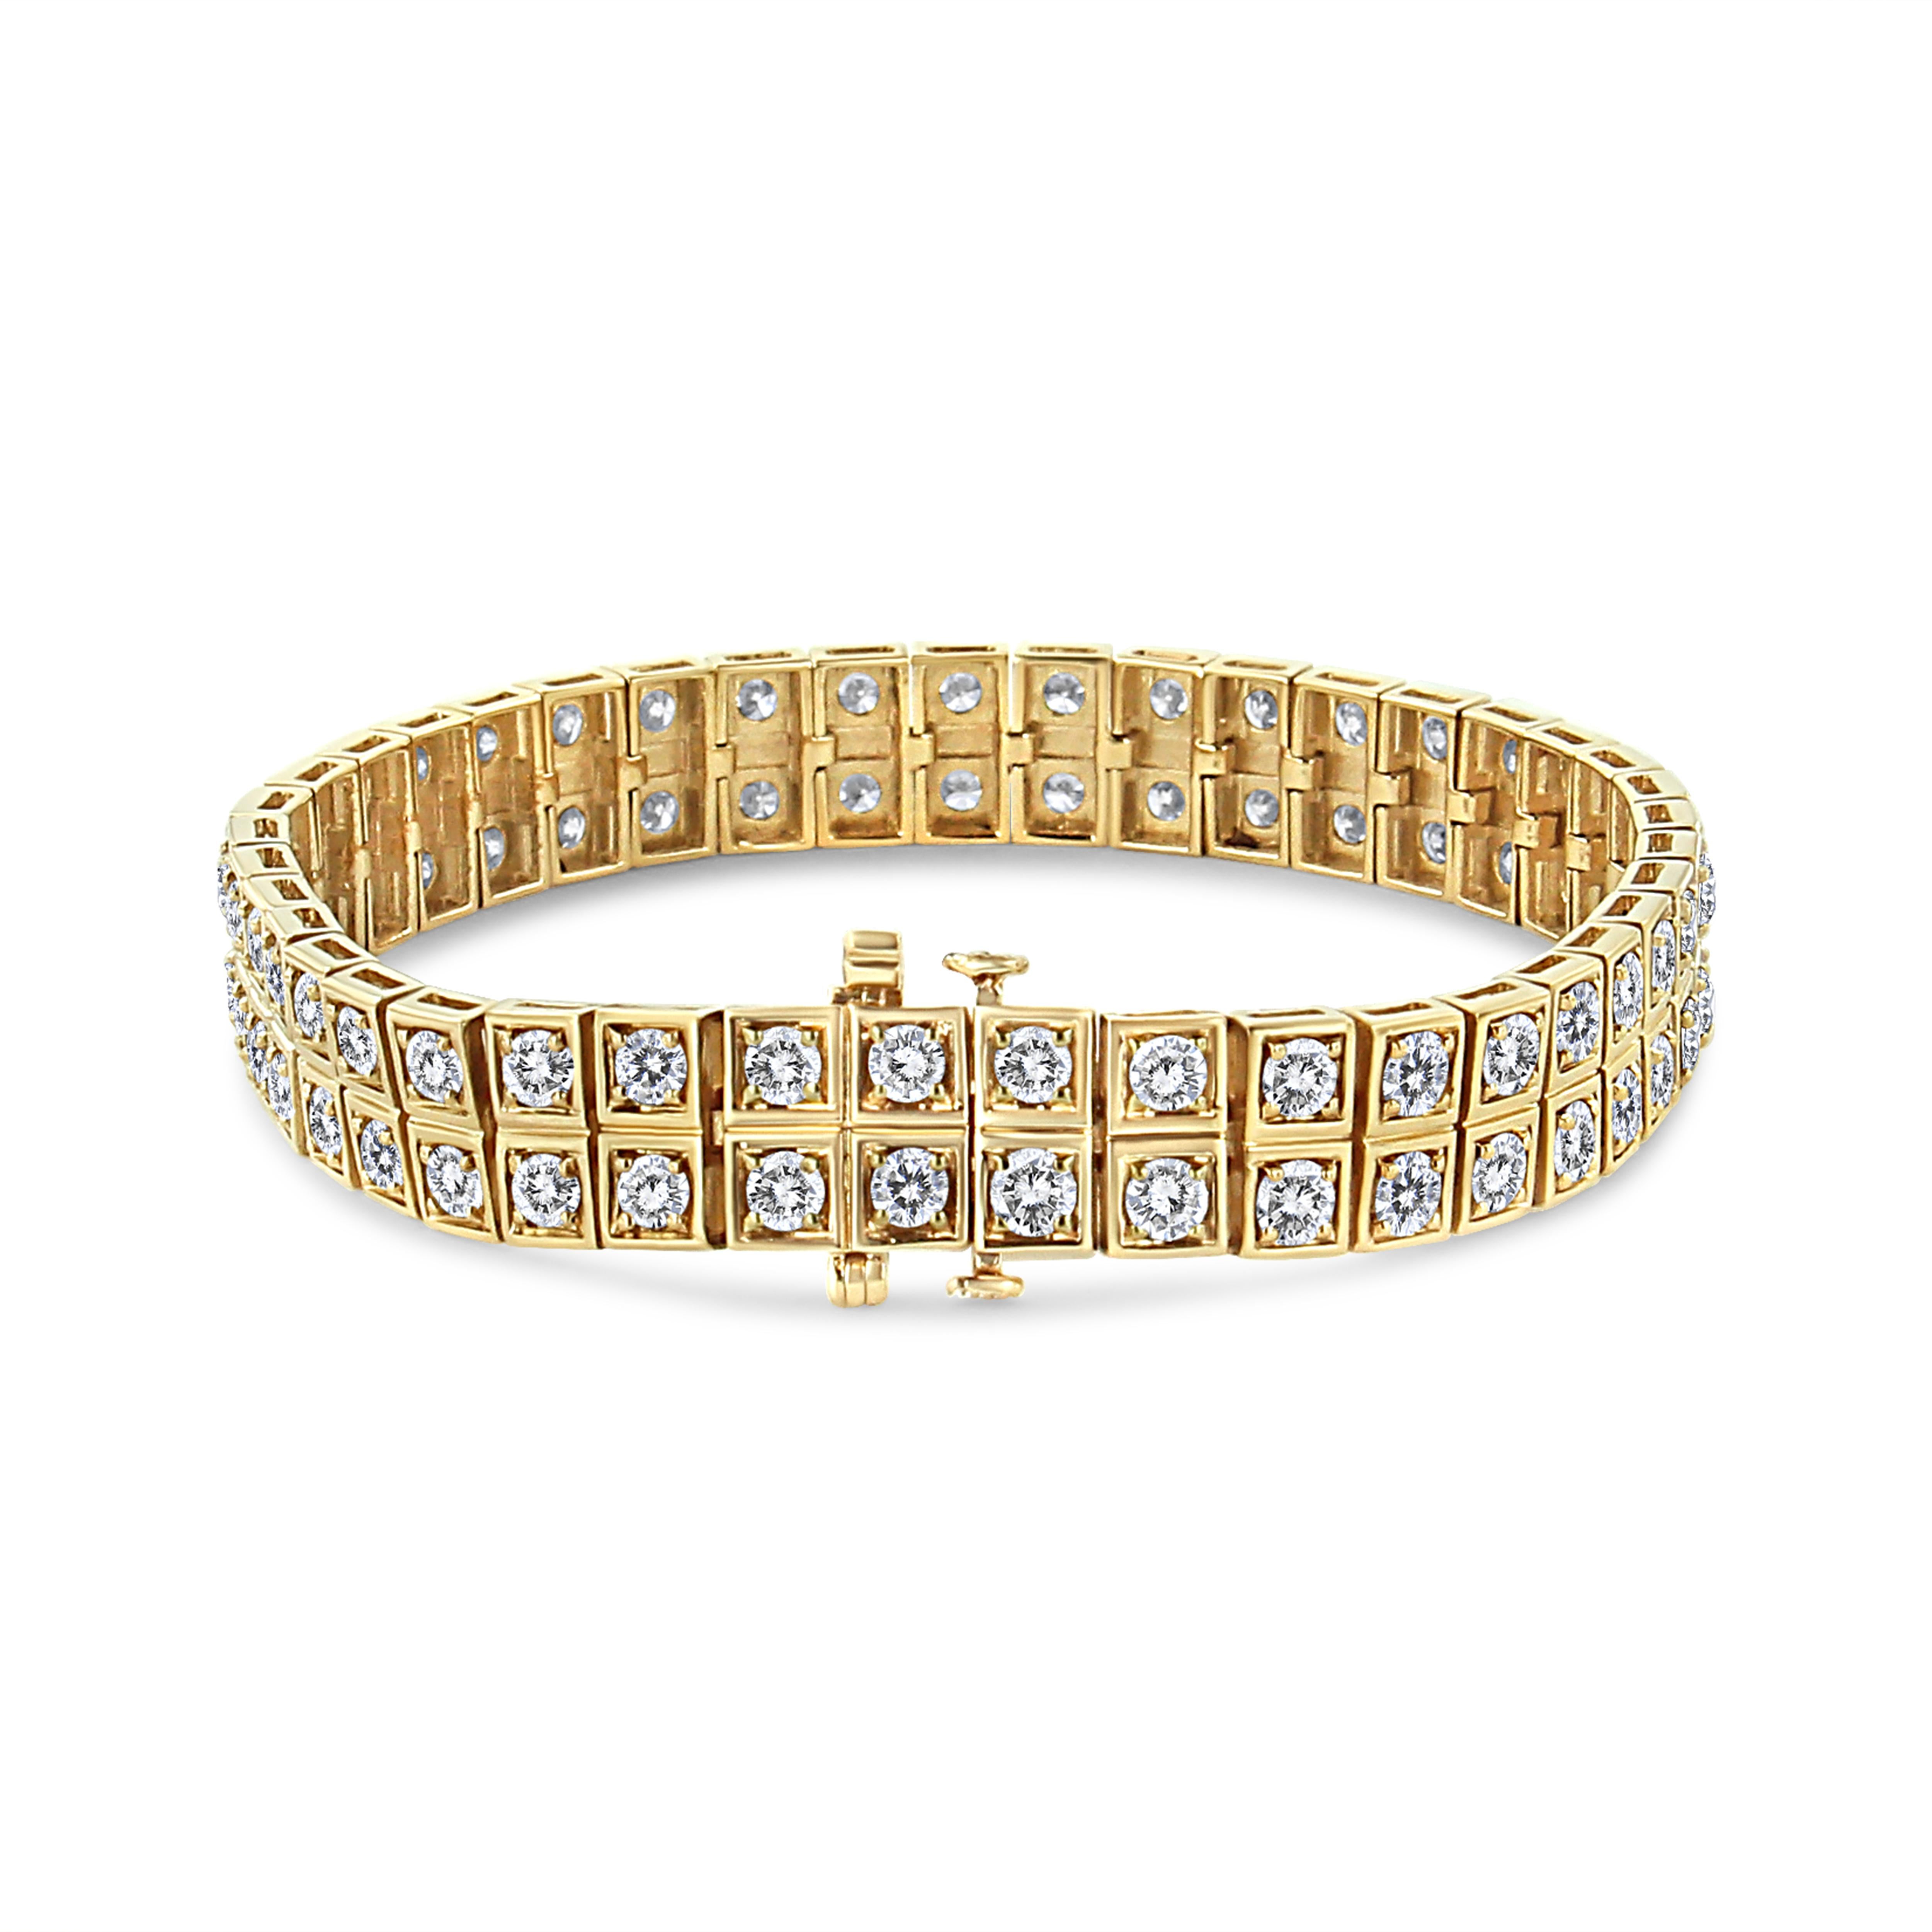 Accrocheur et glamour, ce superbe bracelet à maillons est orné de 8 carats de diamants naturels à couper le souffle. Les doubles rangées empilées de diamants ronds brillent dans l'or jaune 10k étincelant. 8 carats de diamants naturels brillent dans